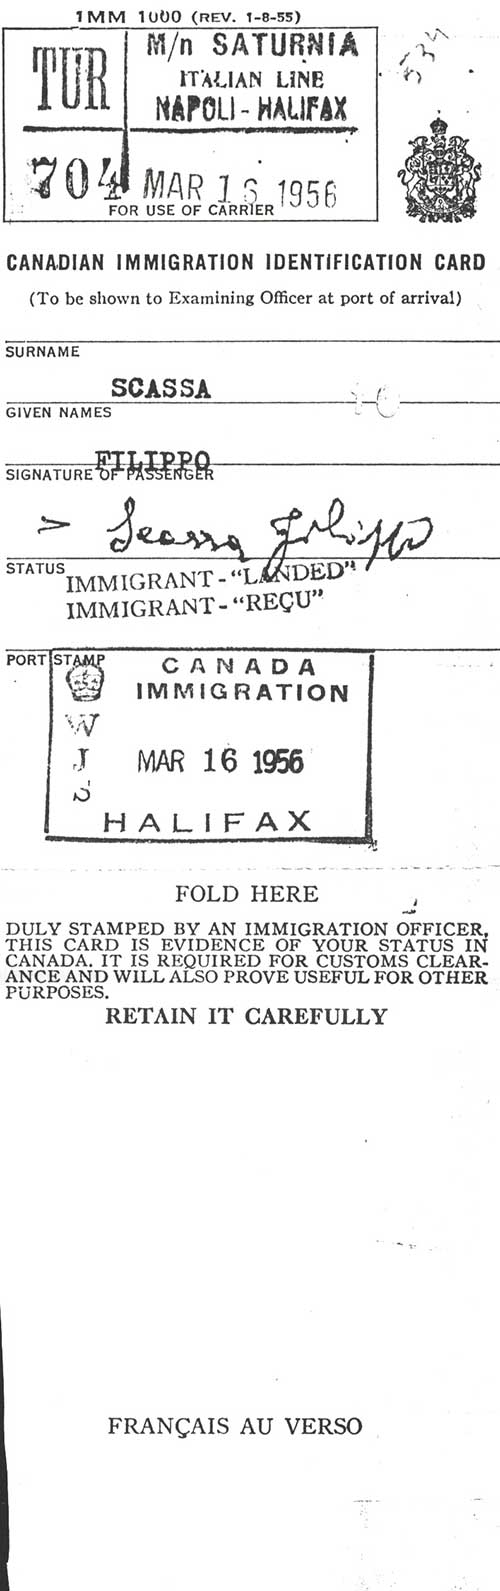 Carte d’identité d’immigration canadienne délivrée à Filippo Scassa, 1956. Musée canadien de l’immigration du Quai 21 (DI2013.1814.3).